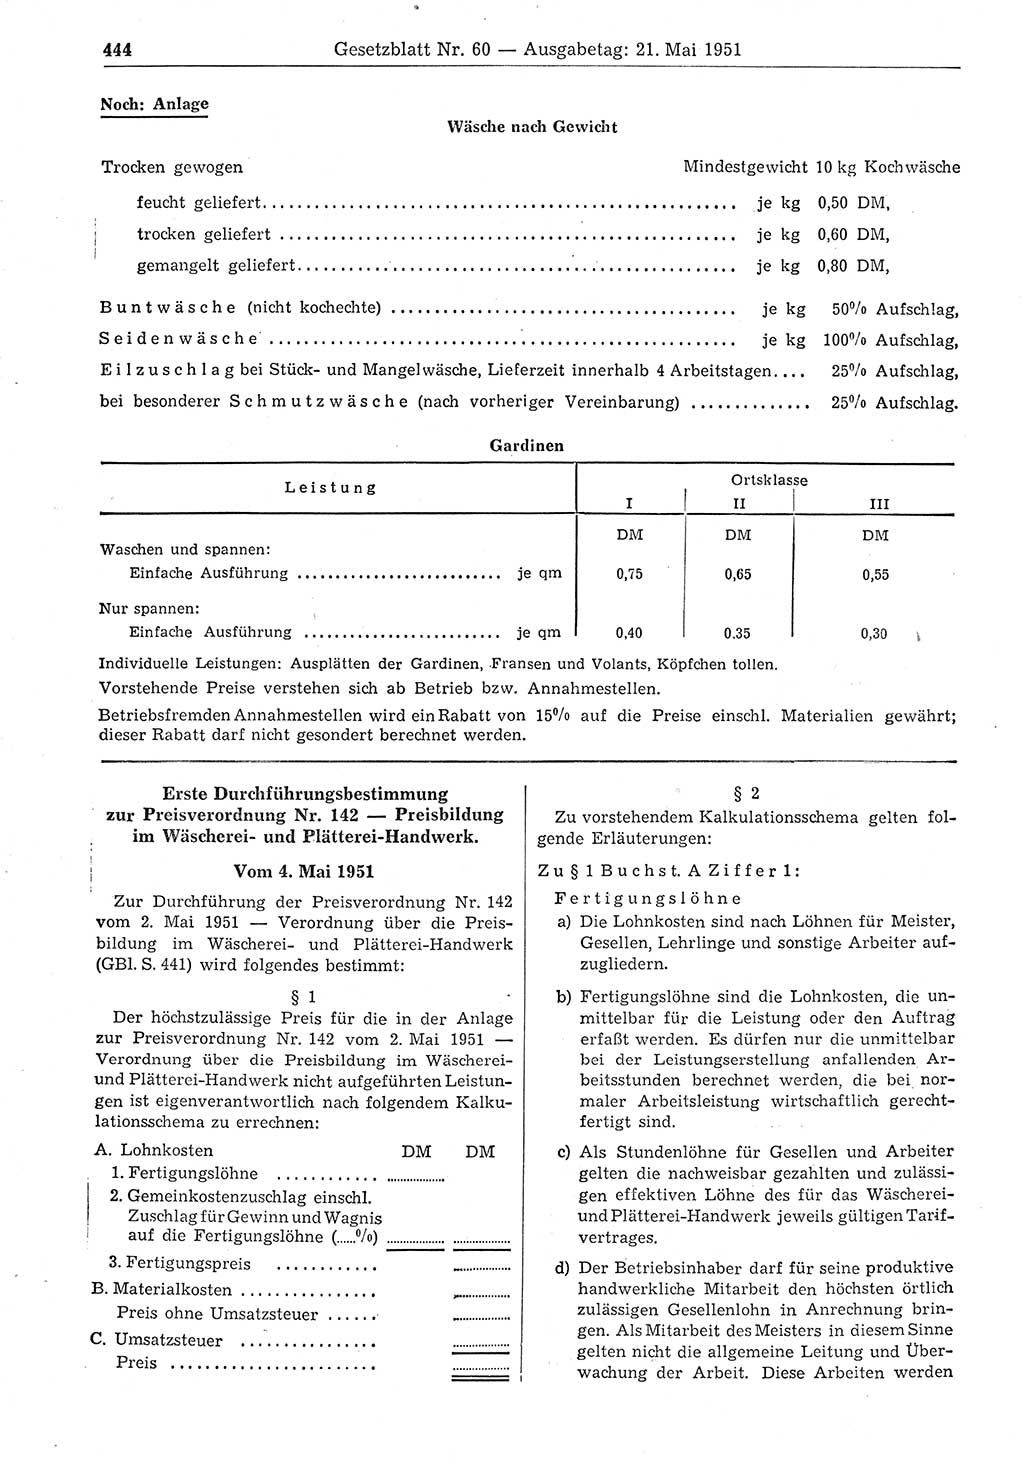 Gesetzblatt (GBl.) der Deutschen Demokratischen Republik (DDR) 1951, Seite 444 (GBl. DDR 1951, S. 444)